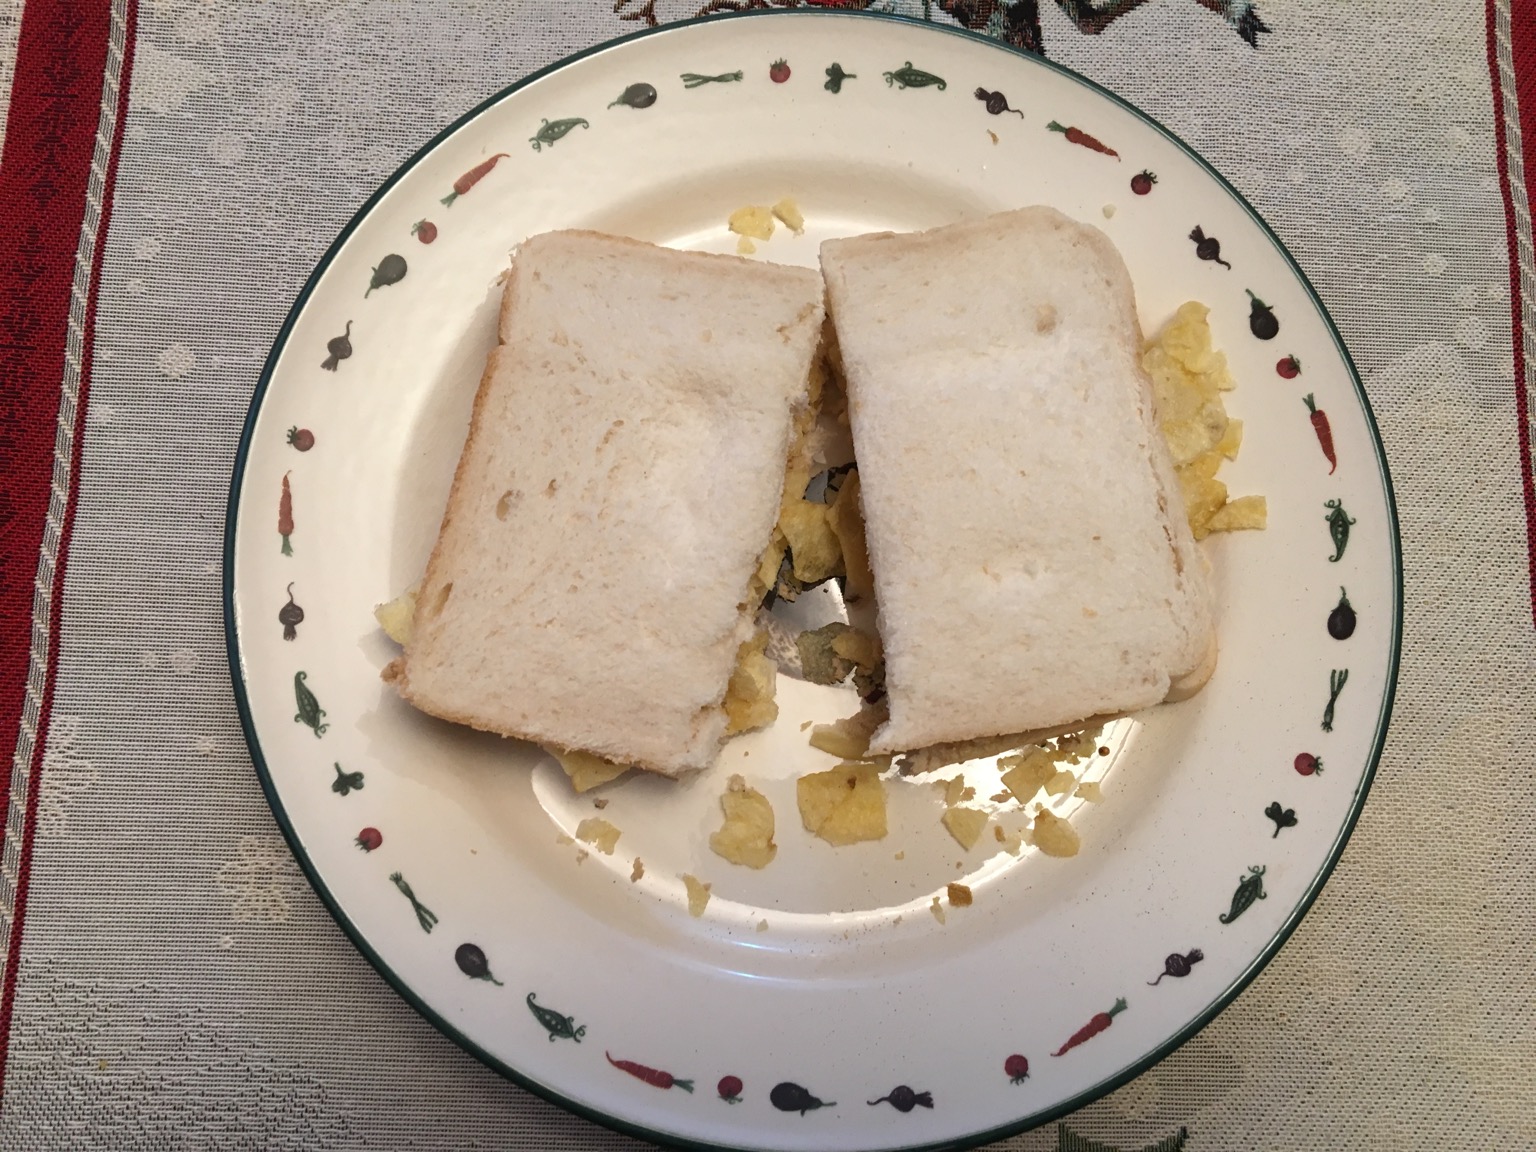 Overhead view of white crisp sandwich cut in half